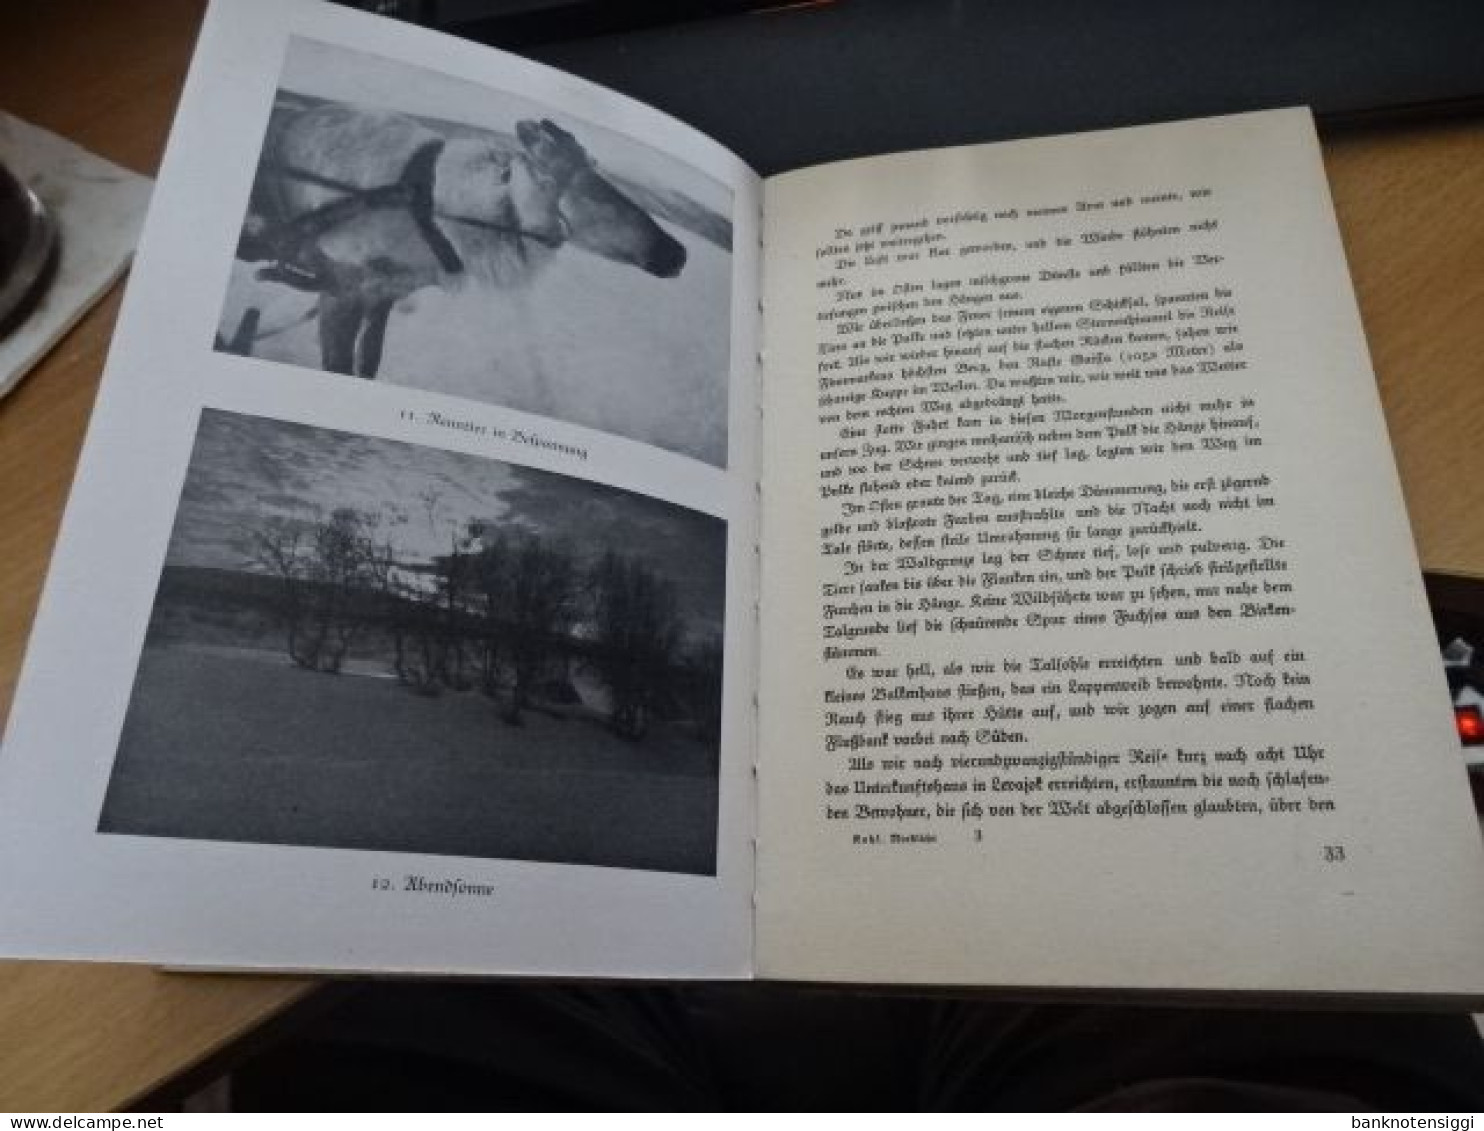 1 Buch Sonderdruck für die Luftwaffe 1926 (Erbelnisse und Waderung in Lappland)